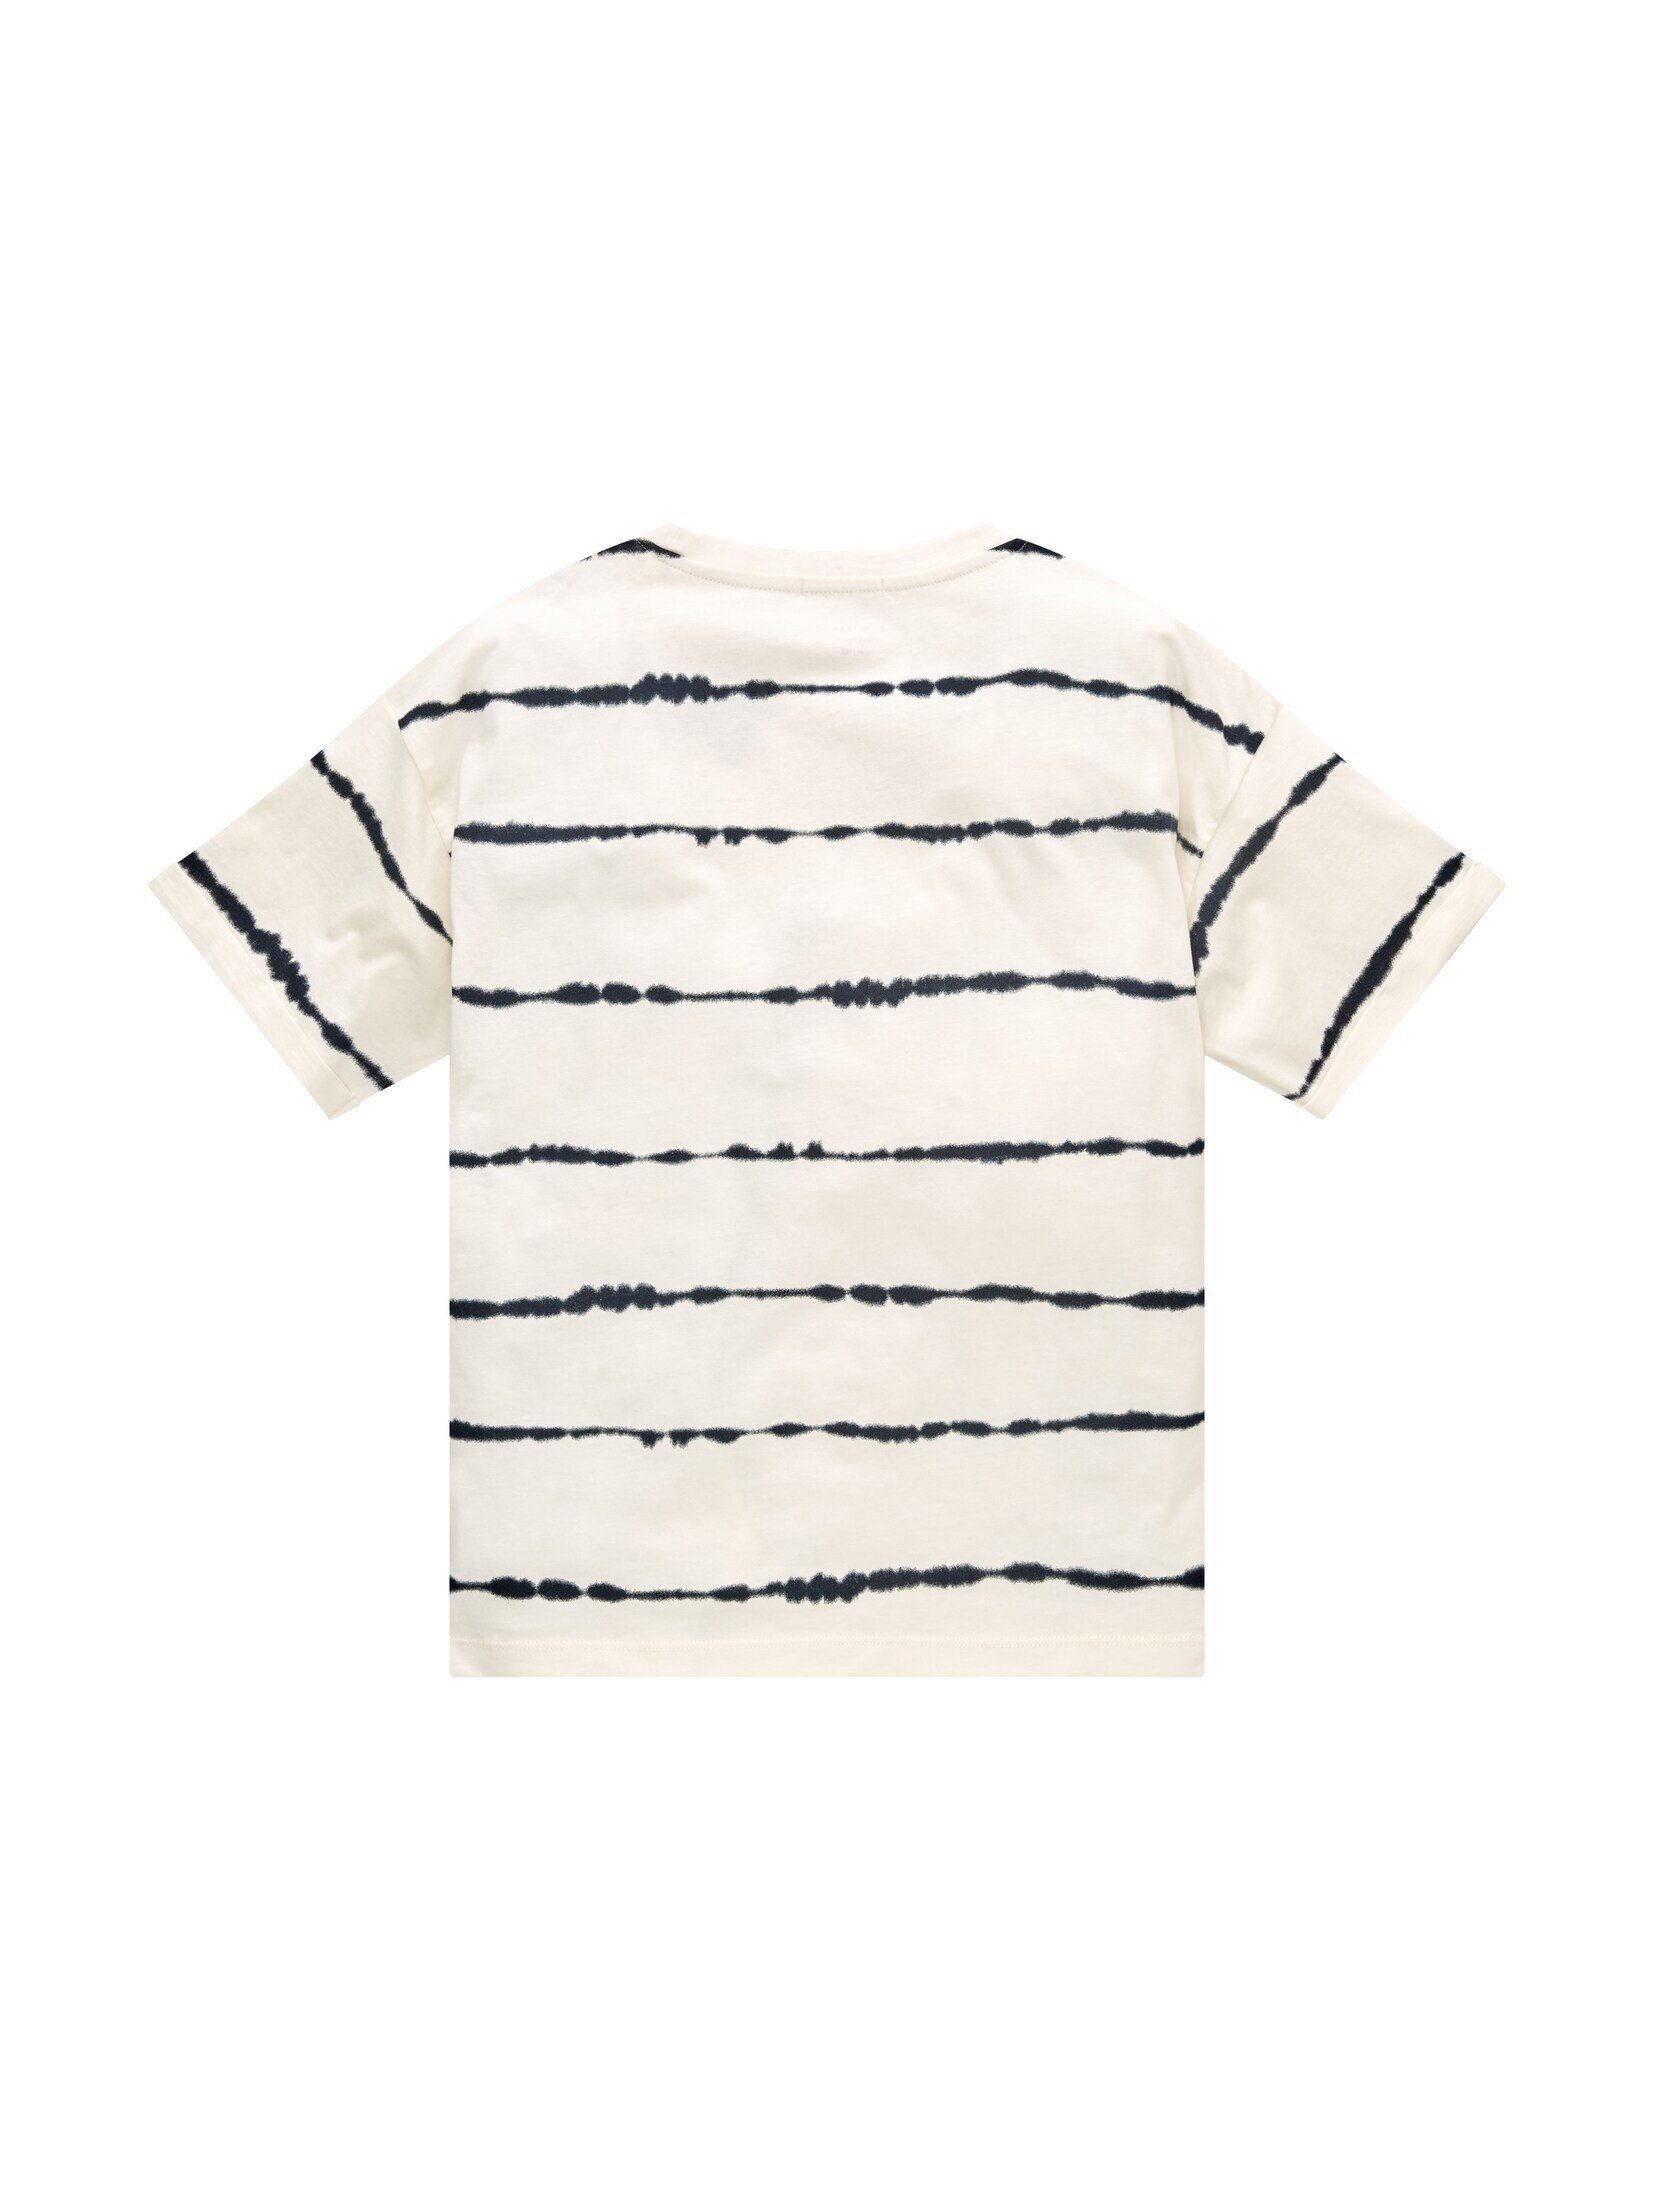 TOM TAILOR T-Shirt stripe Batik Oversized white T-Shirt batik